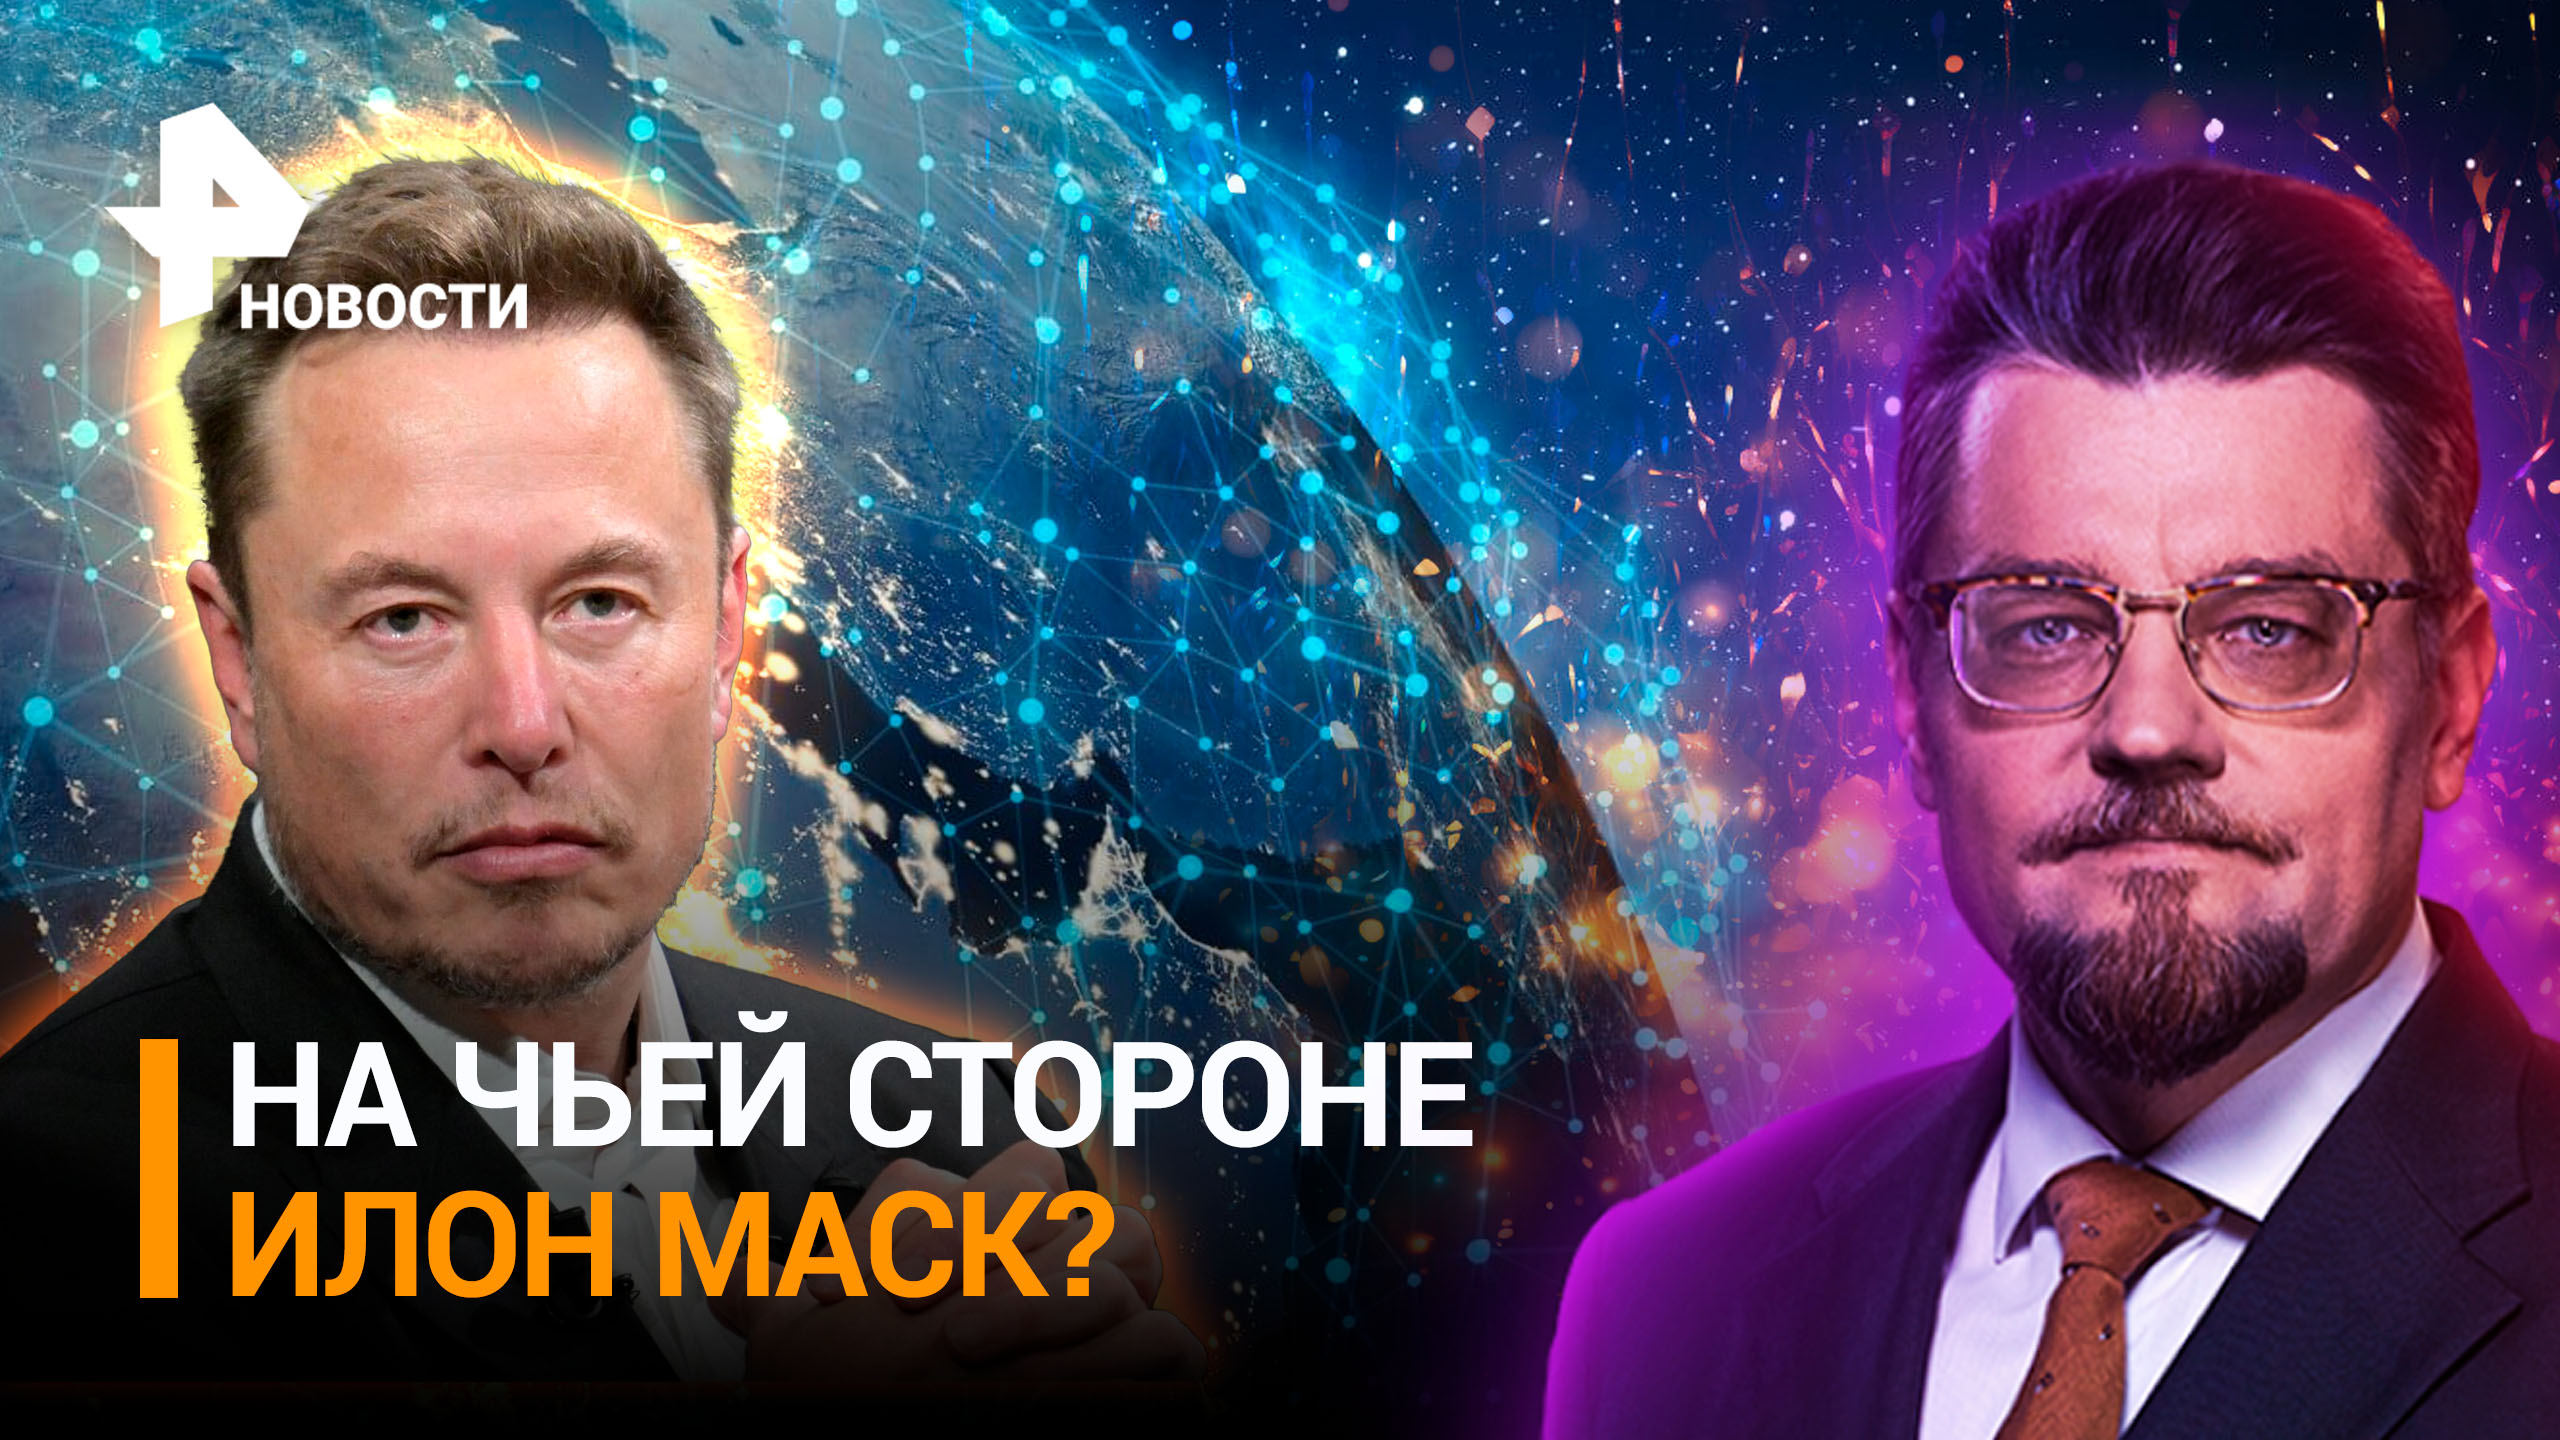 Военная операция Starlink на Украине: кому служит Илон Маск / ДОБРОВЭФИРЕ